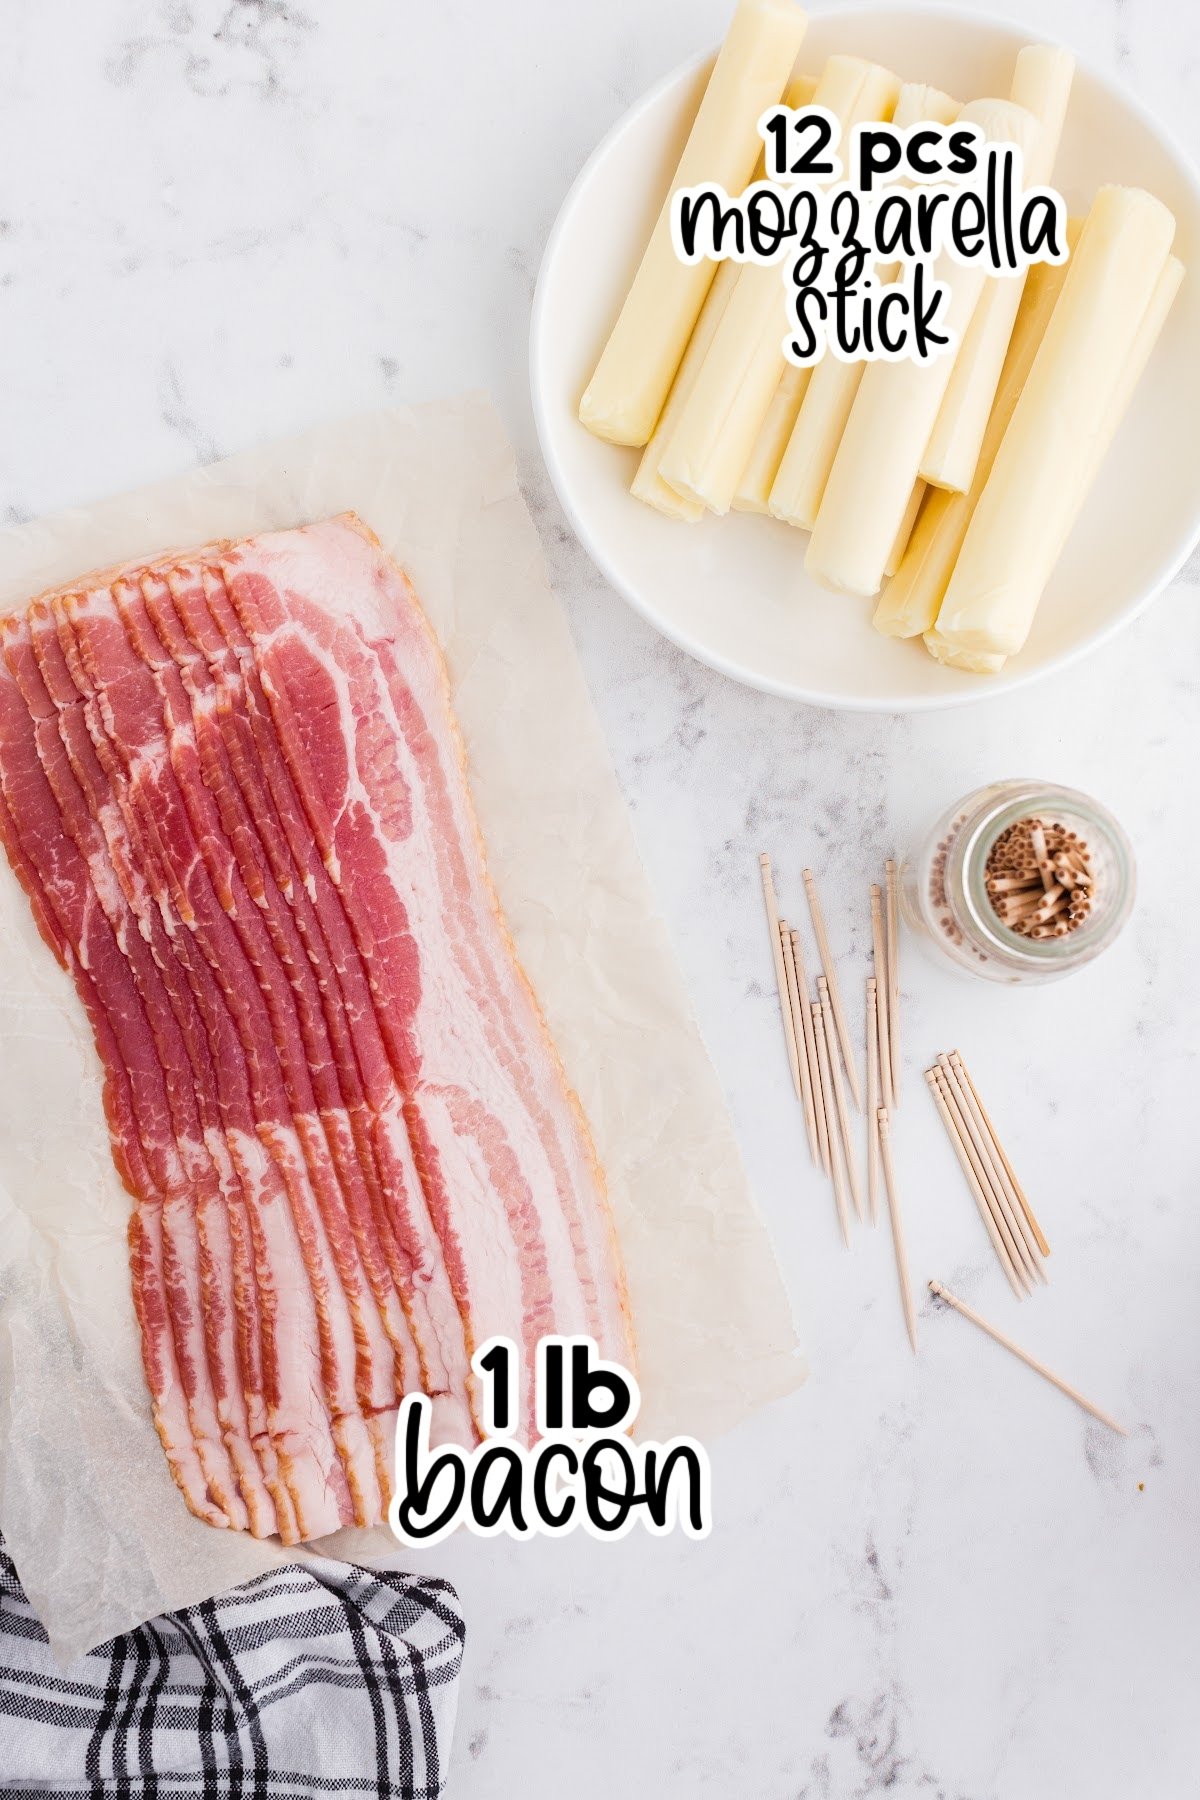 Ingredients needed to make bacon wrapped mozzarella sticks.